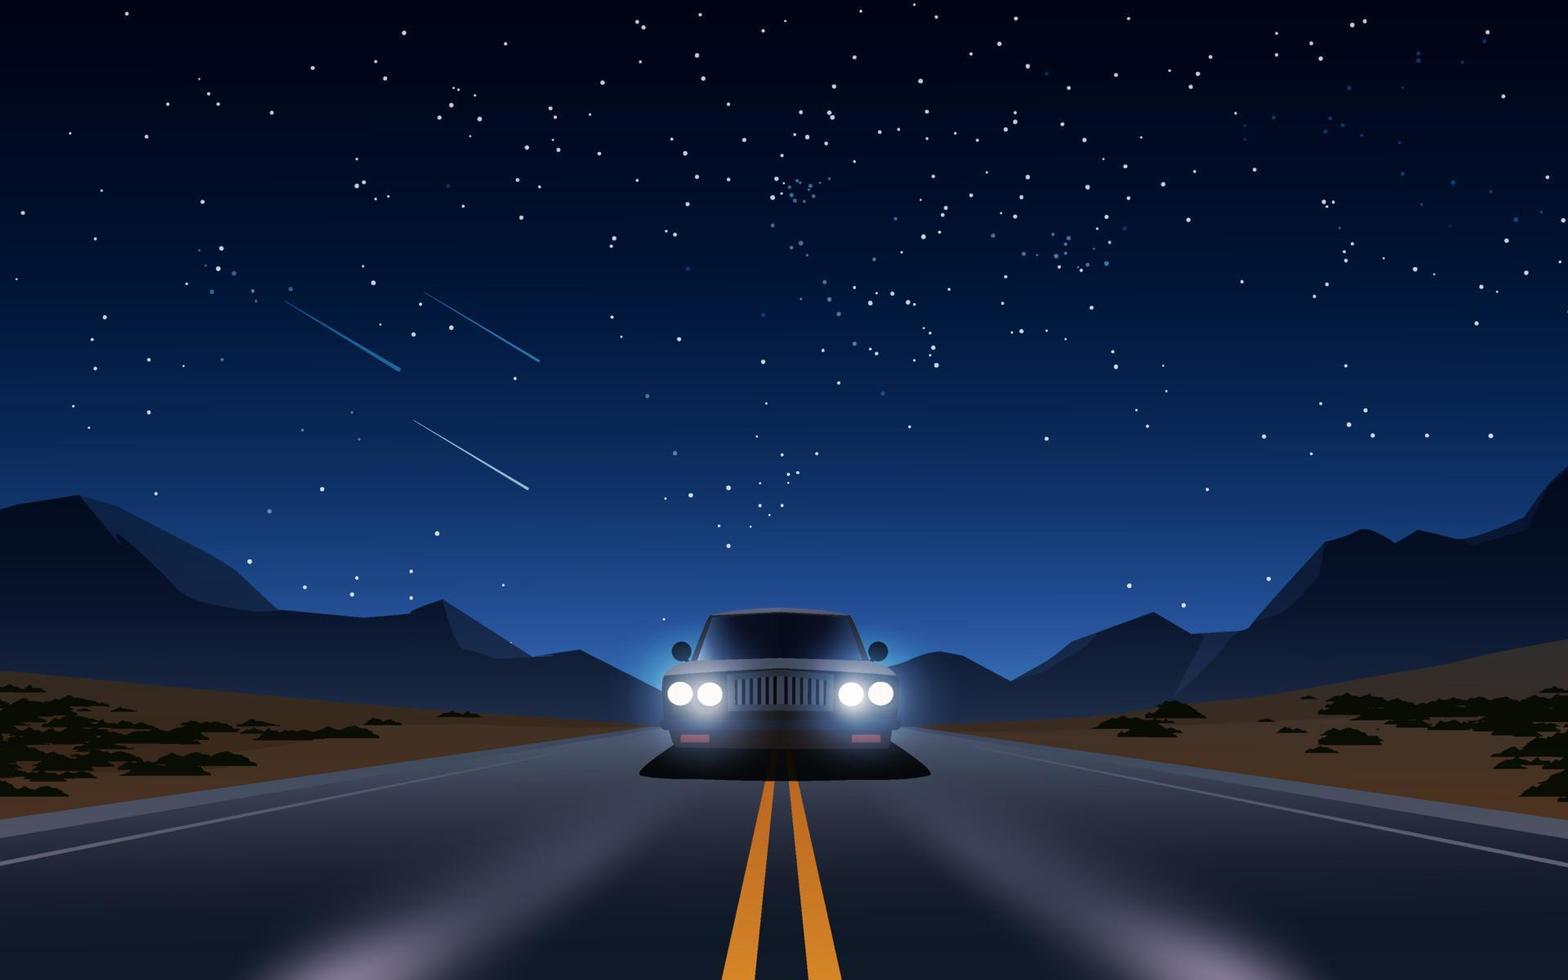 guida in auto in autostrada del deserto di notte sotto il cielo stellato  9432511 Arte vettoriale a Vecteezy